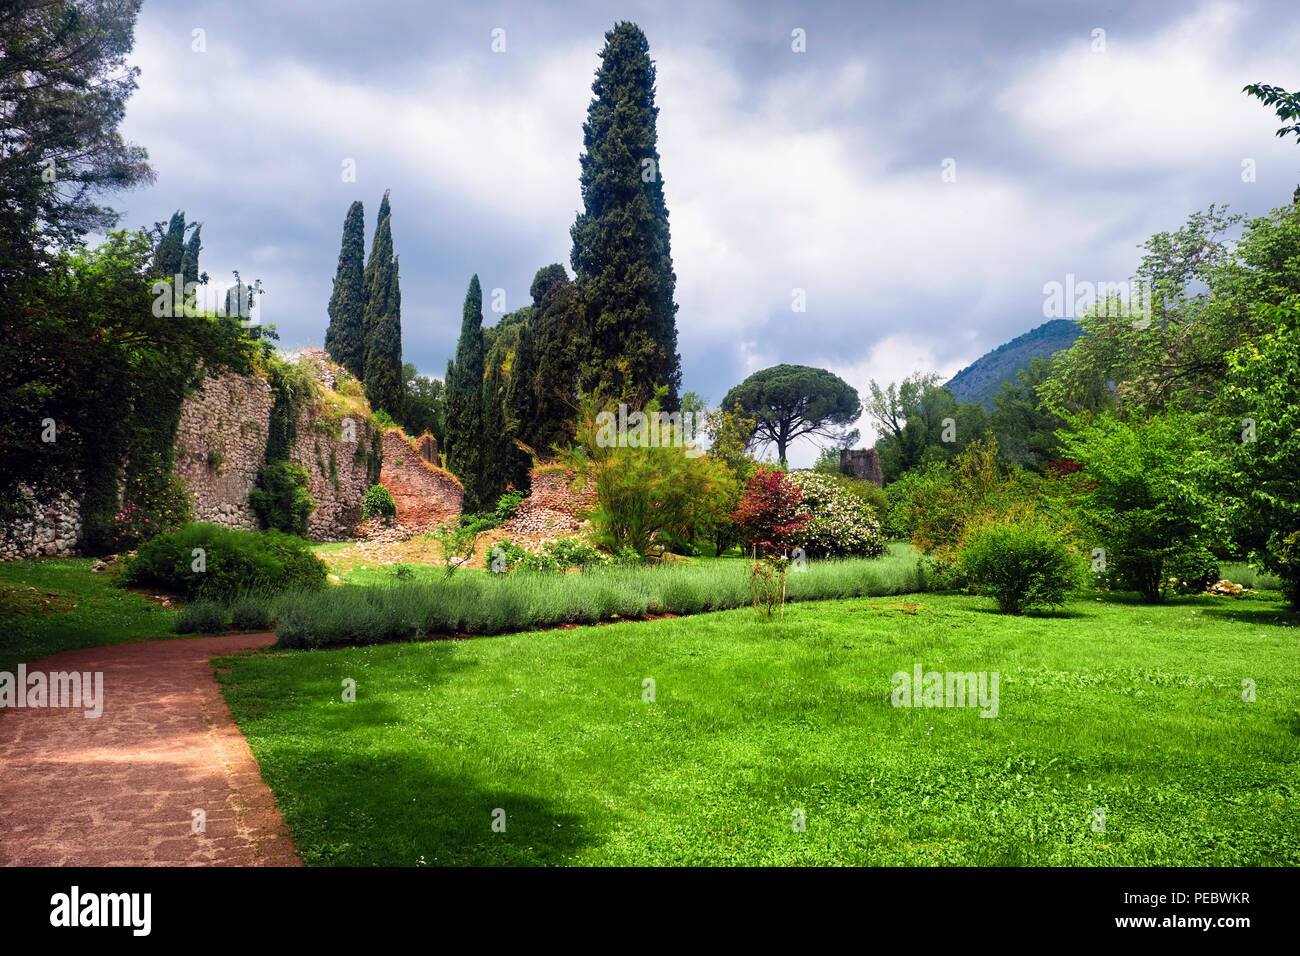 Sentier de marche dans un jardin avec des ruines, Jardin Ninfa, Cisterna di Latina, Italie Banque D'Images